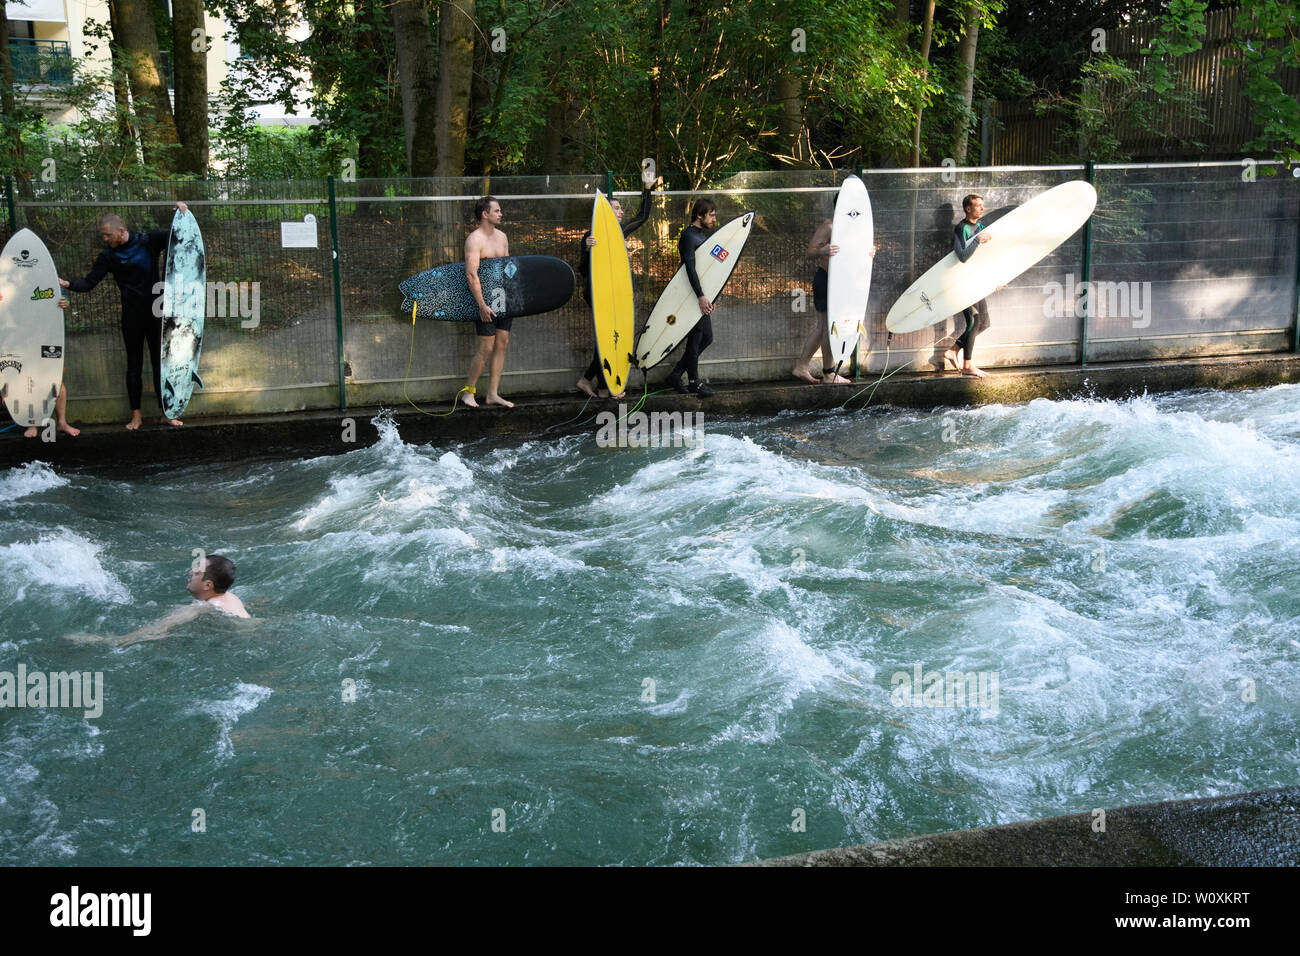 MUNICH, Alemania - Agosto 2018: Surfistas en un tren de ondas estacionarias en un arroyo en el Parque de la ciudad durante la ola de calor. Foto de stock